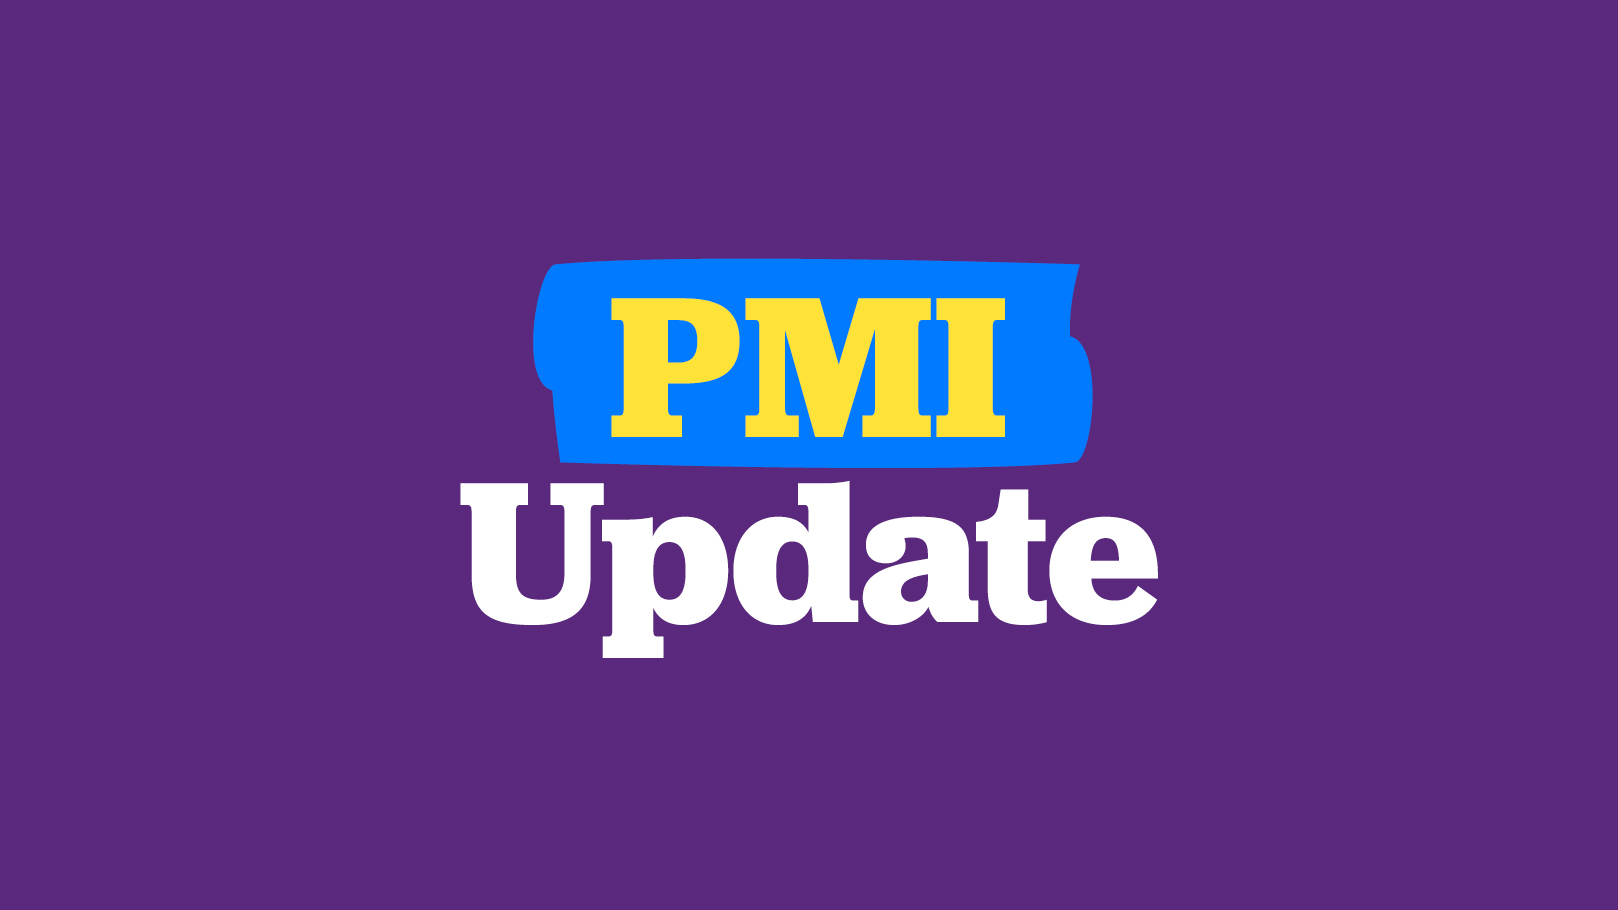 PMI update logo